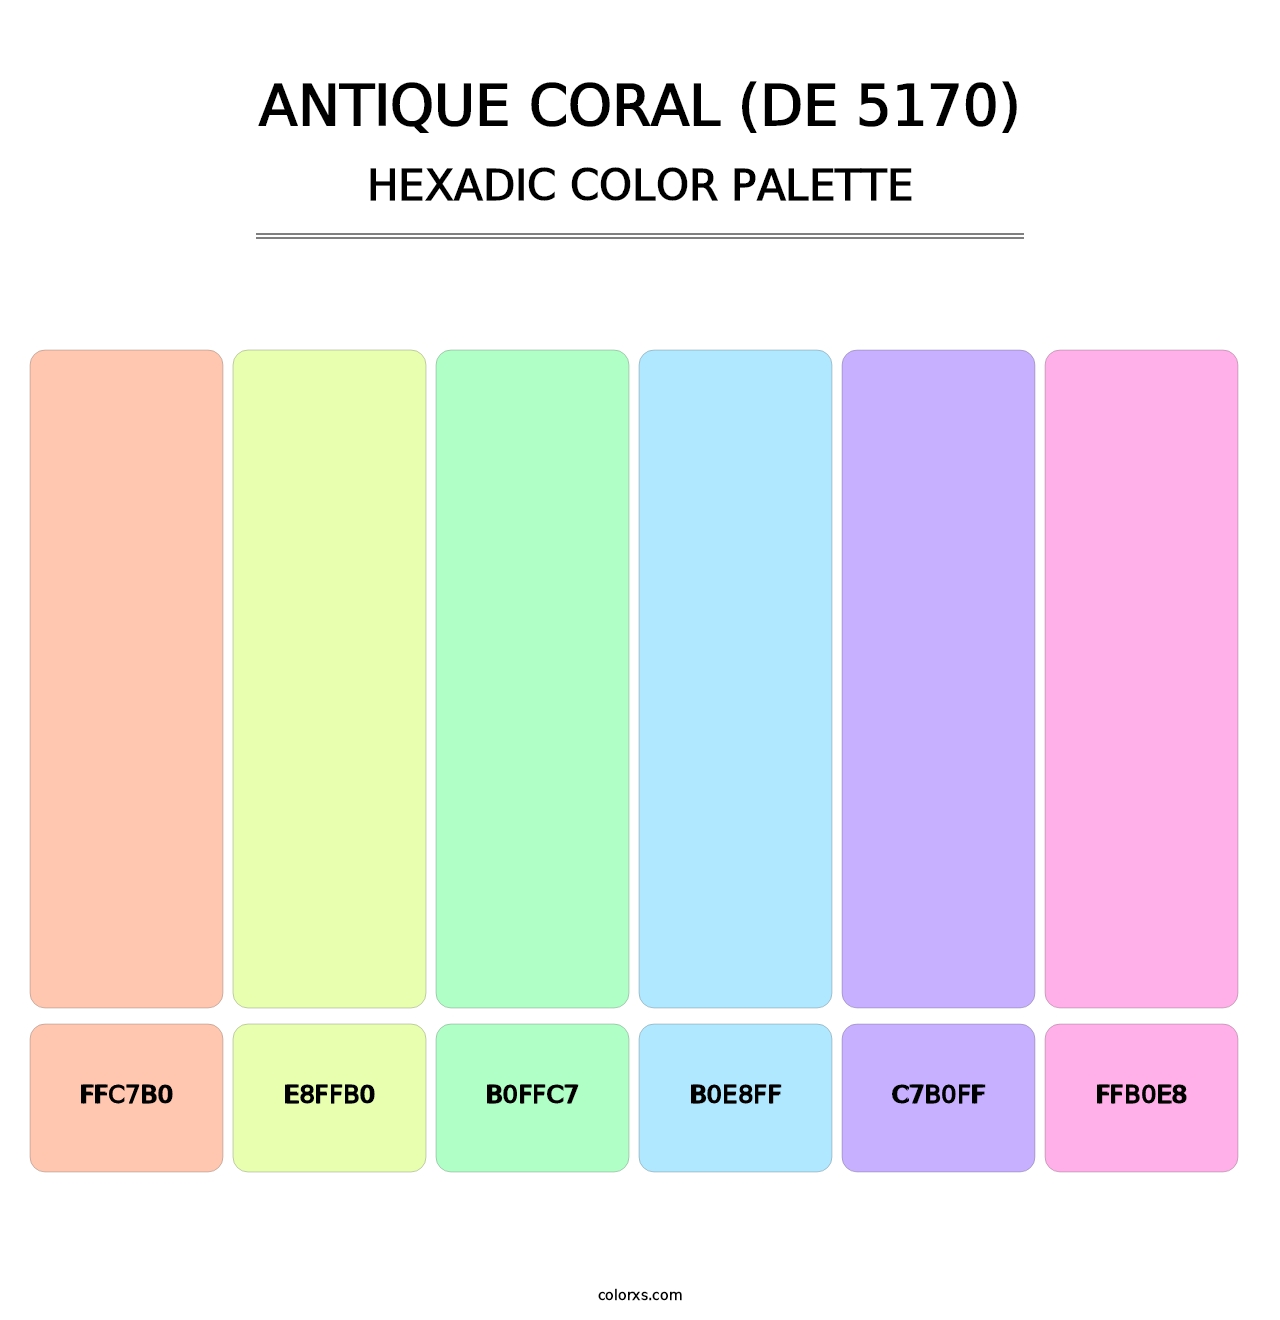 Antique Coral (DE 5170) - Hexadic Color Palette